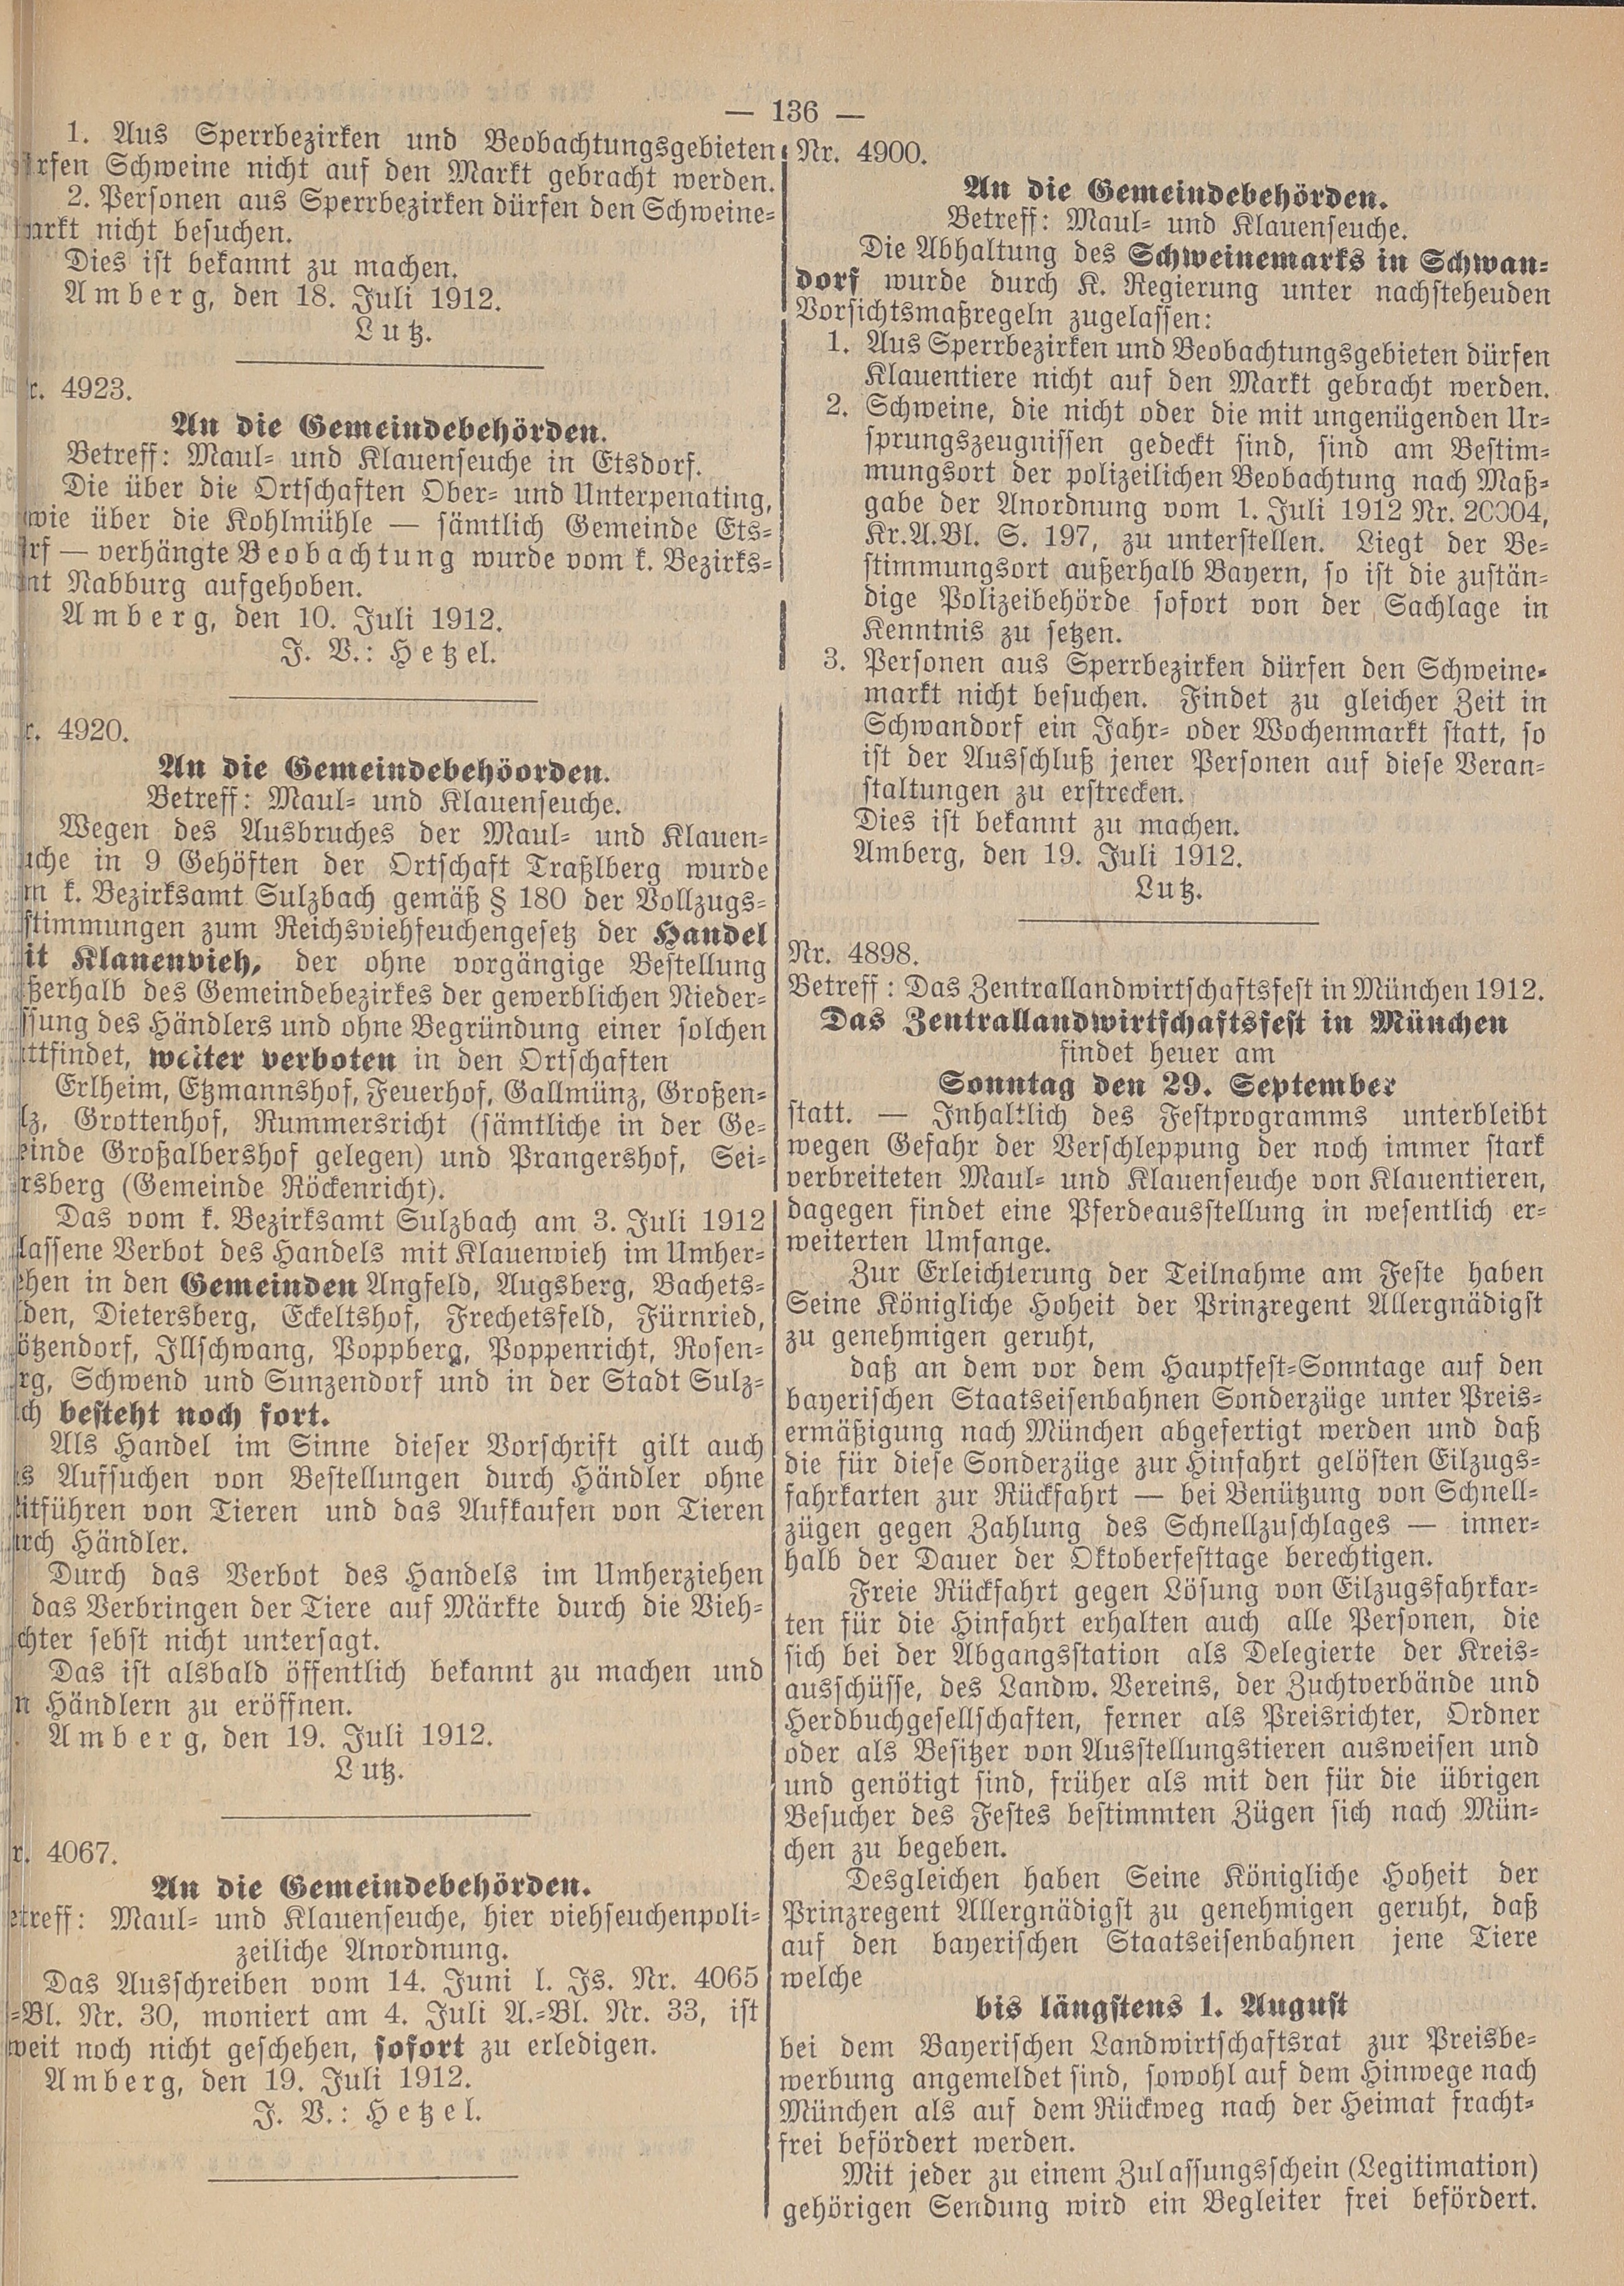 3. amtsblatt-amberg-1912-07-20-n35_4050